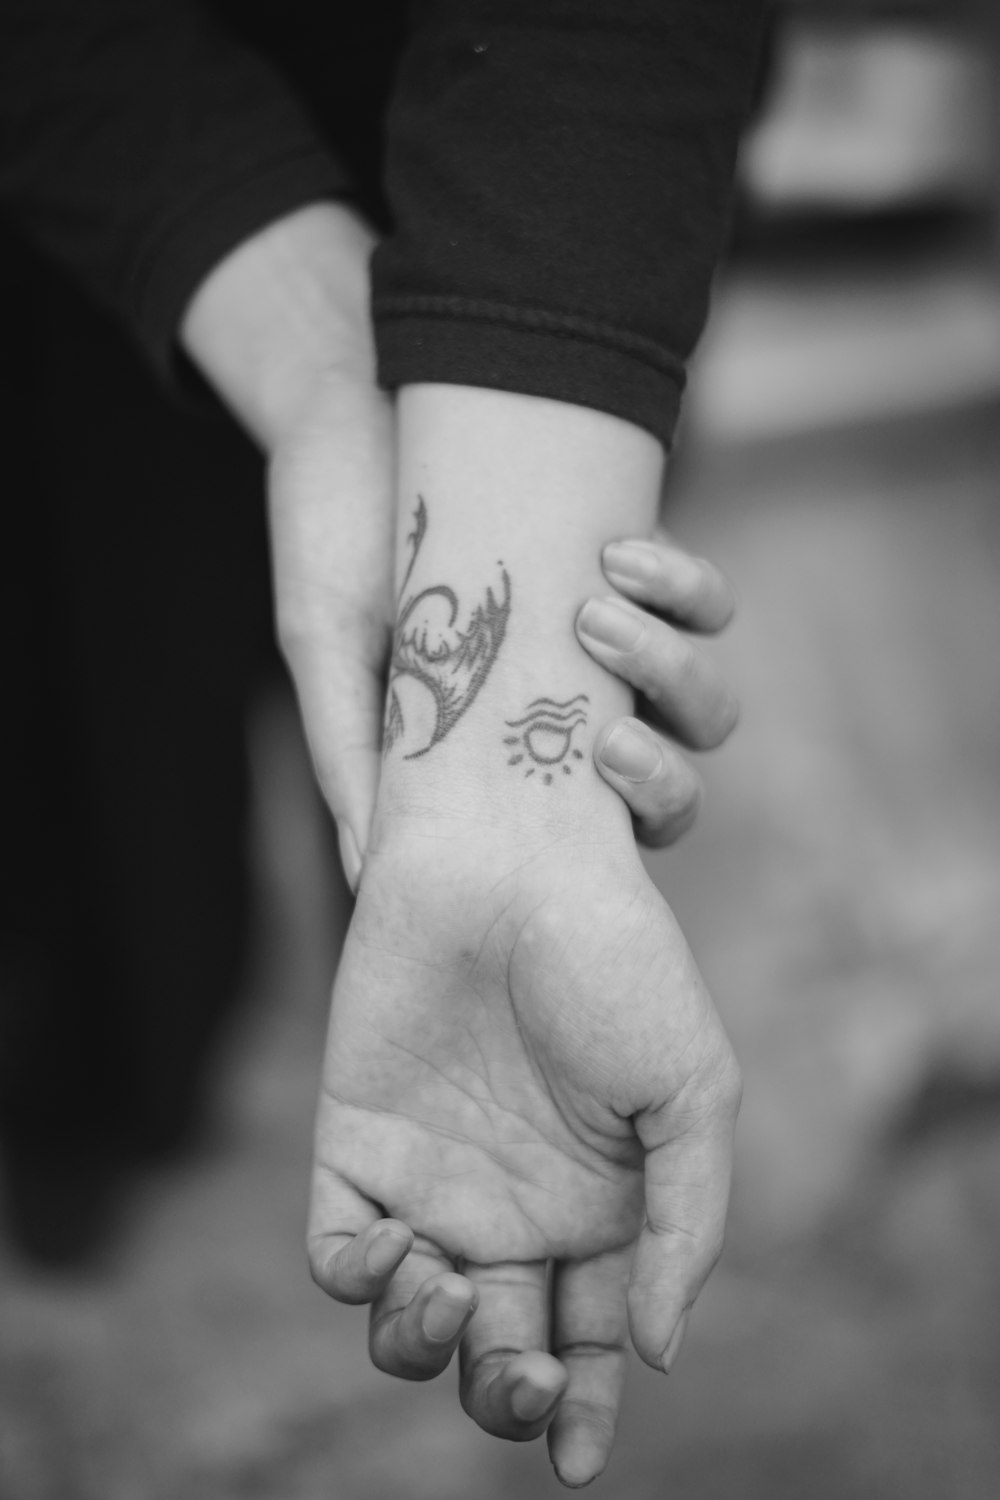 Foto in scala di grigi della mano umana con tatuaggio